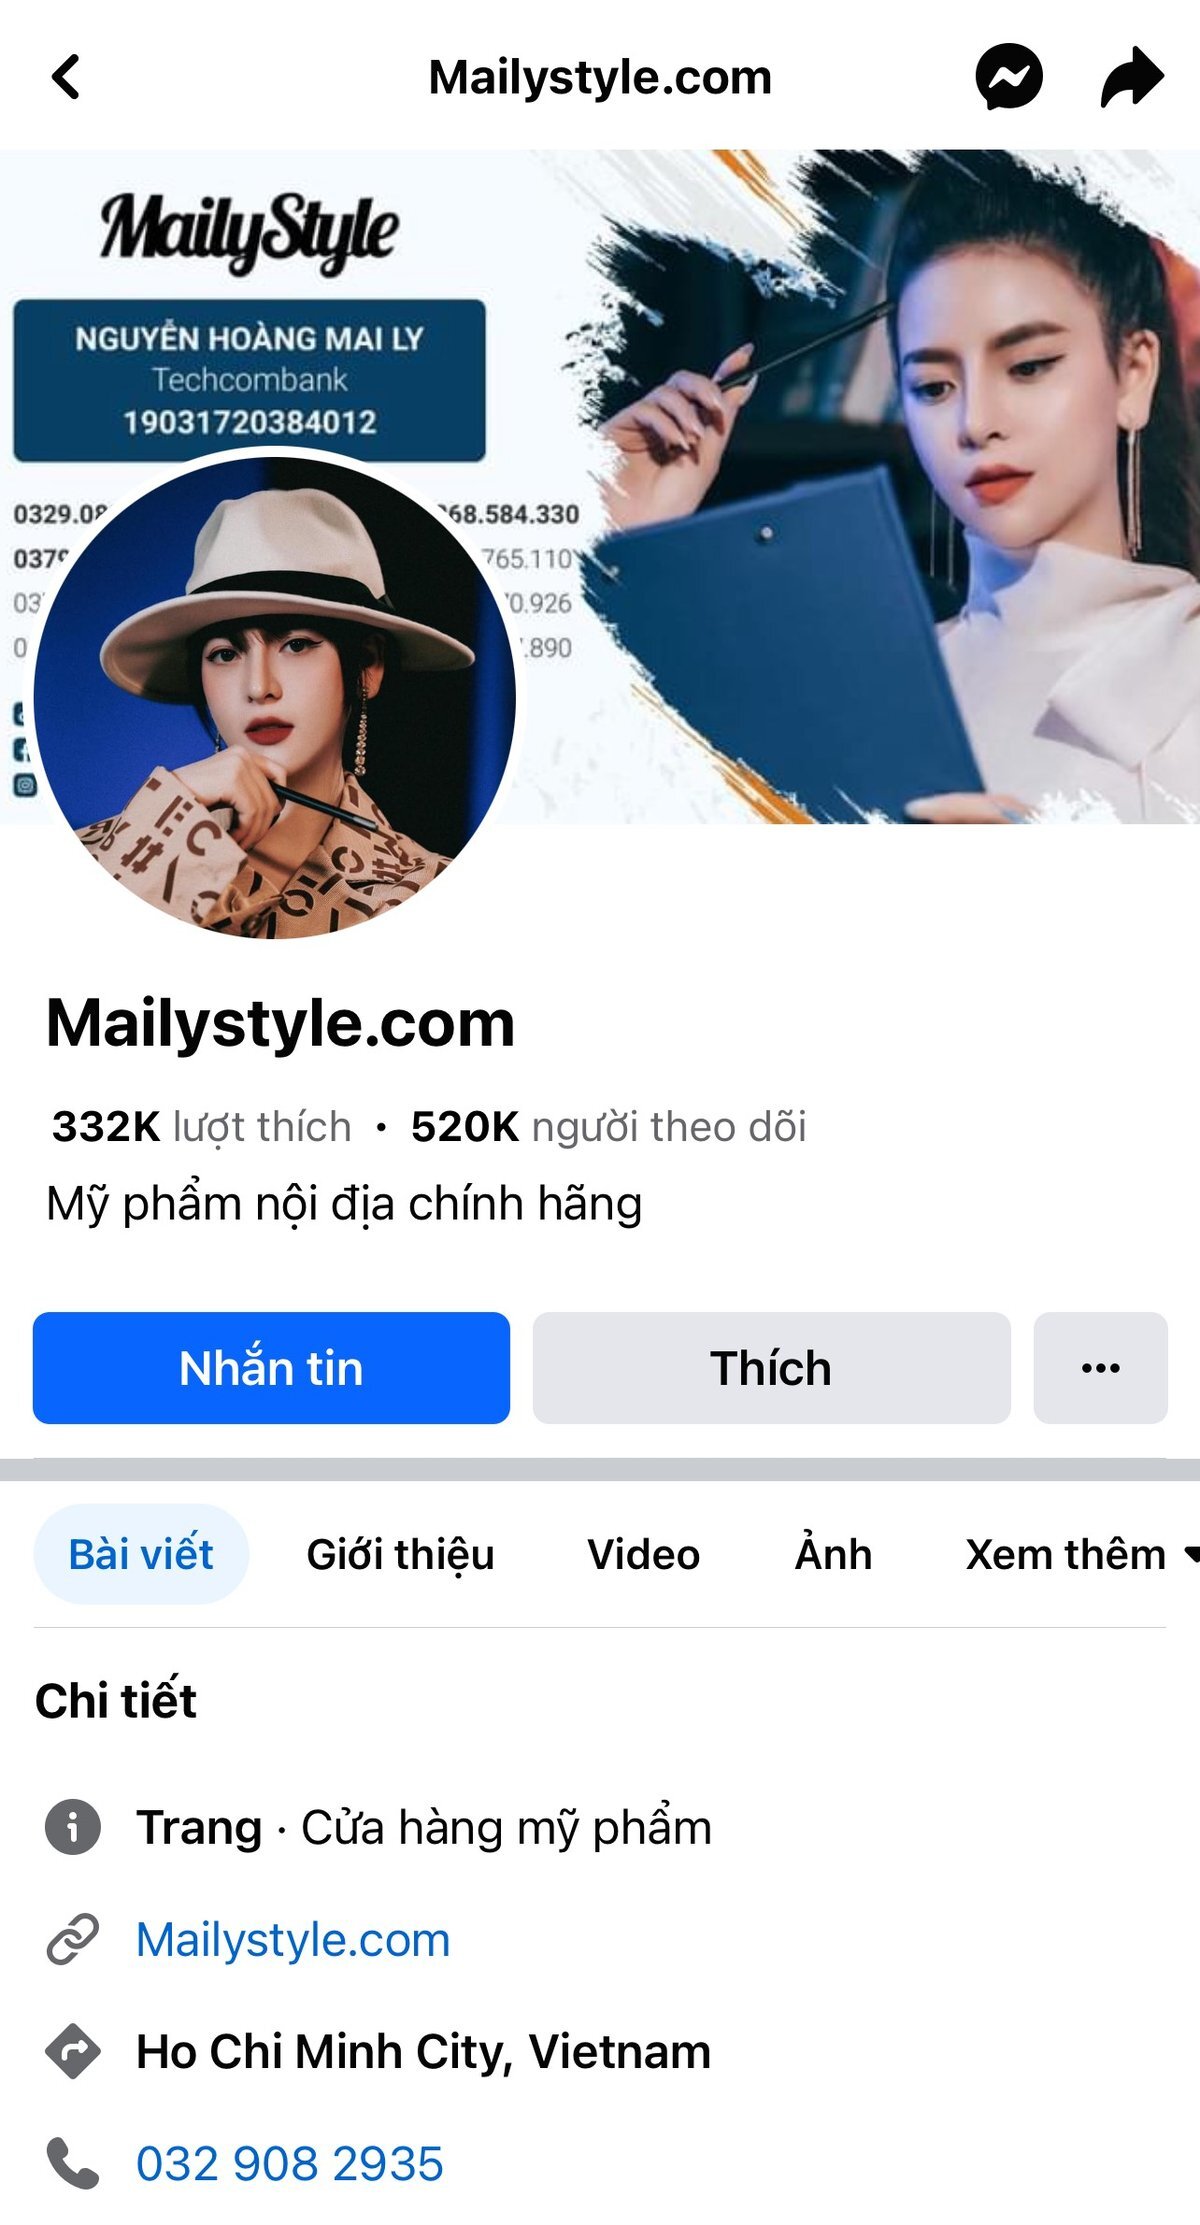 Tài khoản Mailystyle.com có hàng trăm nghìn lượt thích và theo dõi